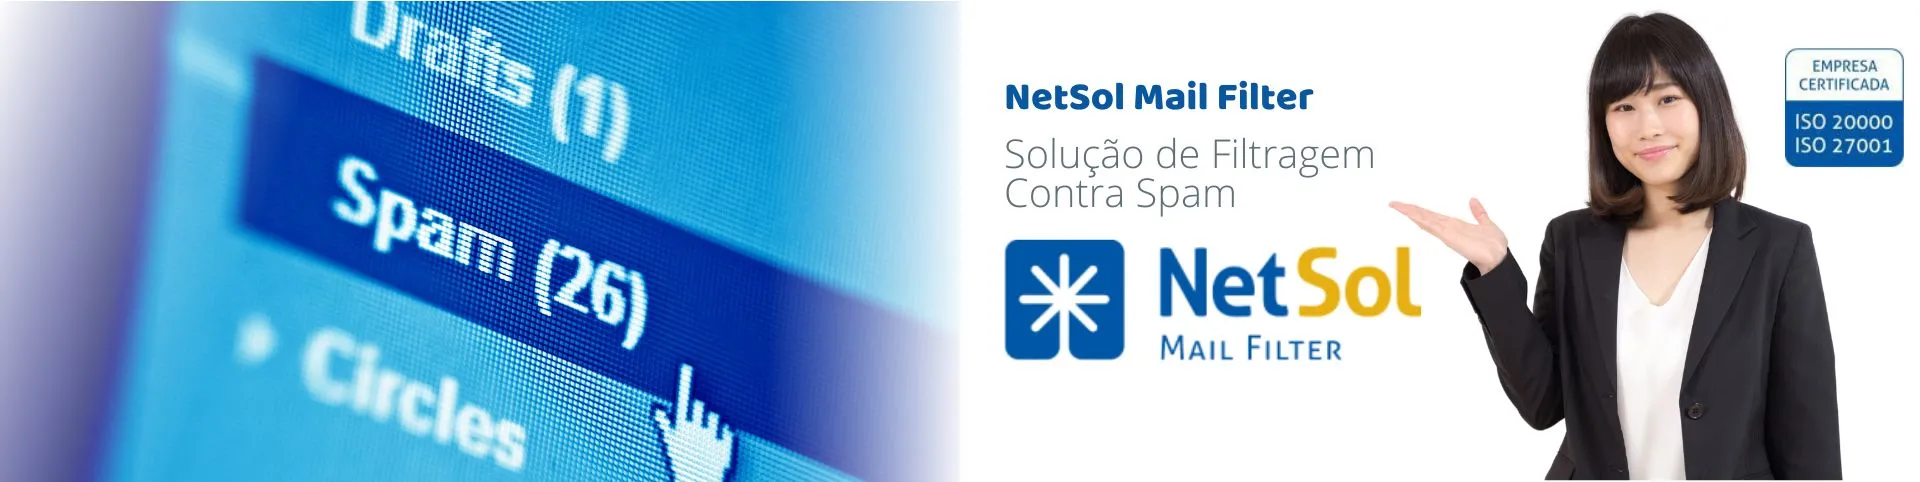 NetSol_MailFilter